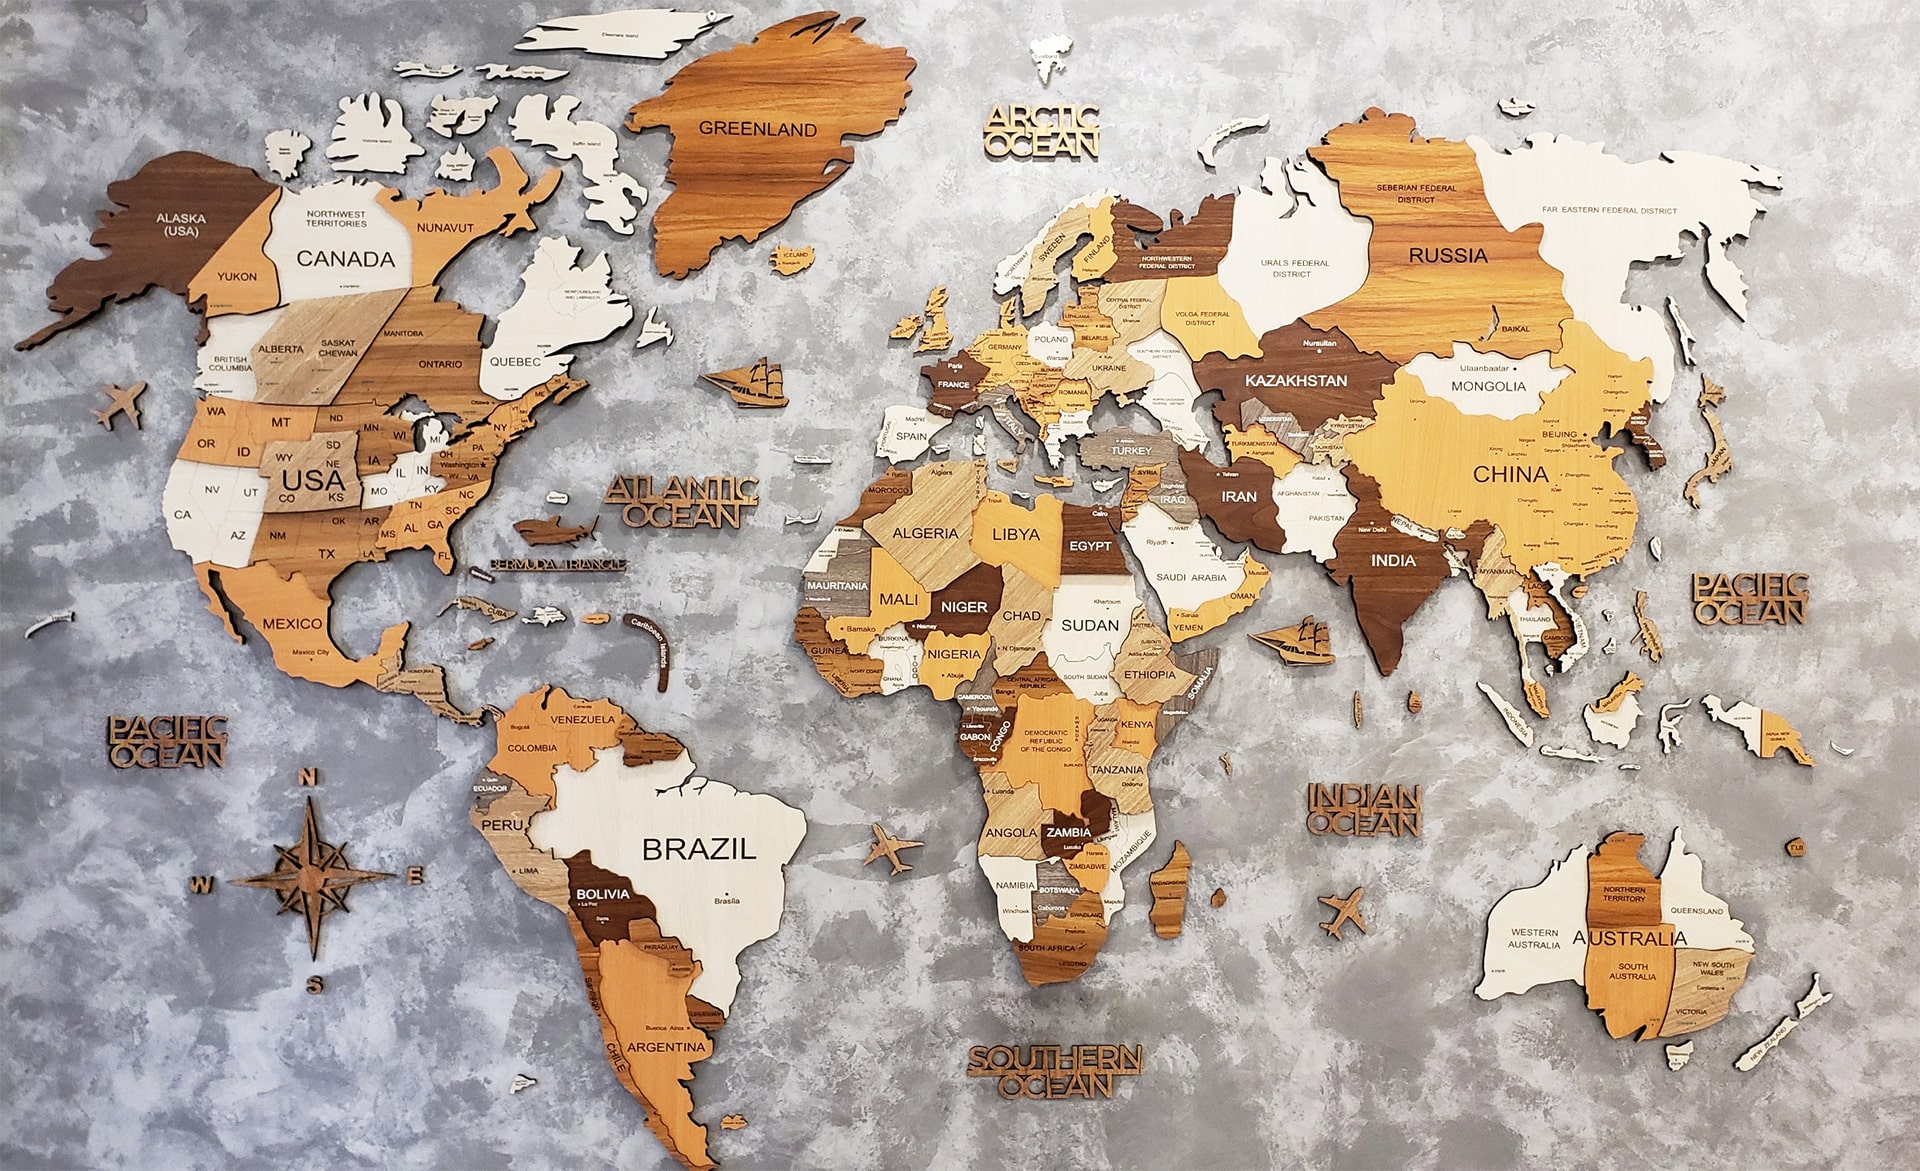 Bản đồ thế giới giá rẻ: Khám phá thế giới mà không cần phải mất quá nhiều tiền. Chúng tôi cung cấp bản đồ thế giới giá rẻ nhất nhưng vẫn giữ được chất lượng cao cùng nhiều thông tin hữu ích để bạn dễ dàng tìm hiểu.